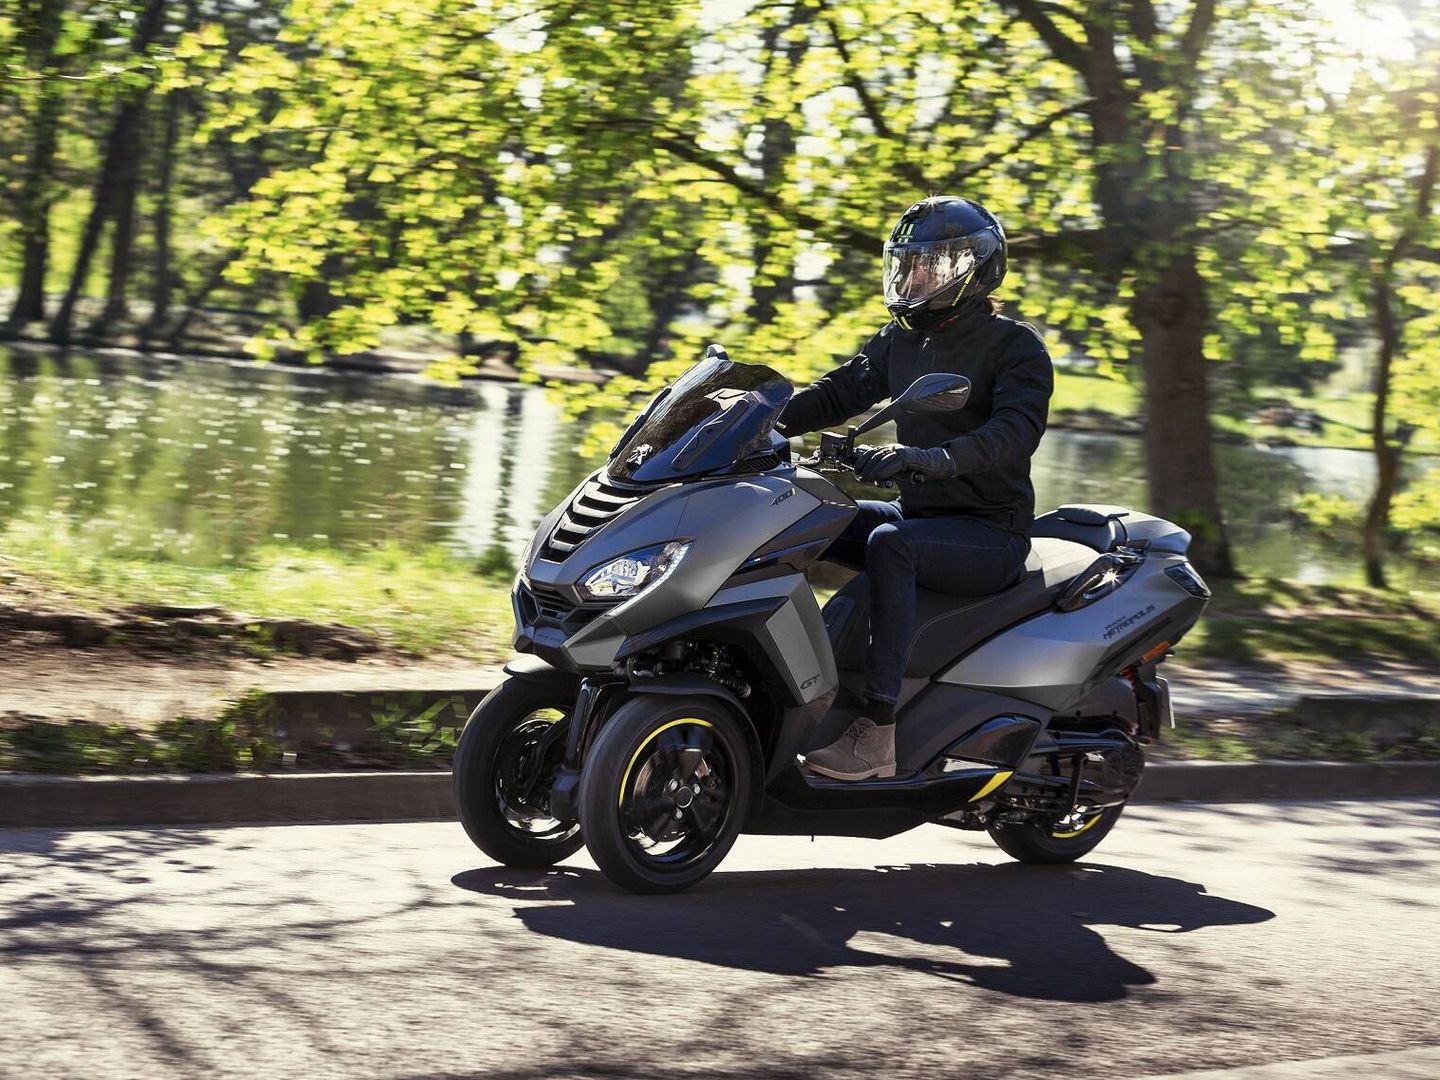 Para trayectos que incluyan autovía, un 'scooter' con más cilindrada aporta confort y seguridad.